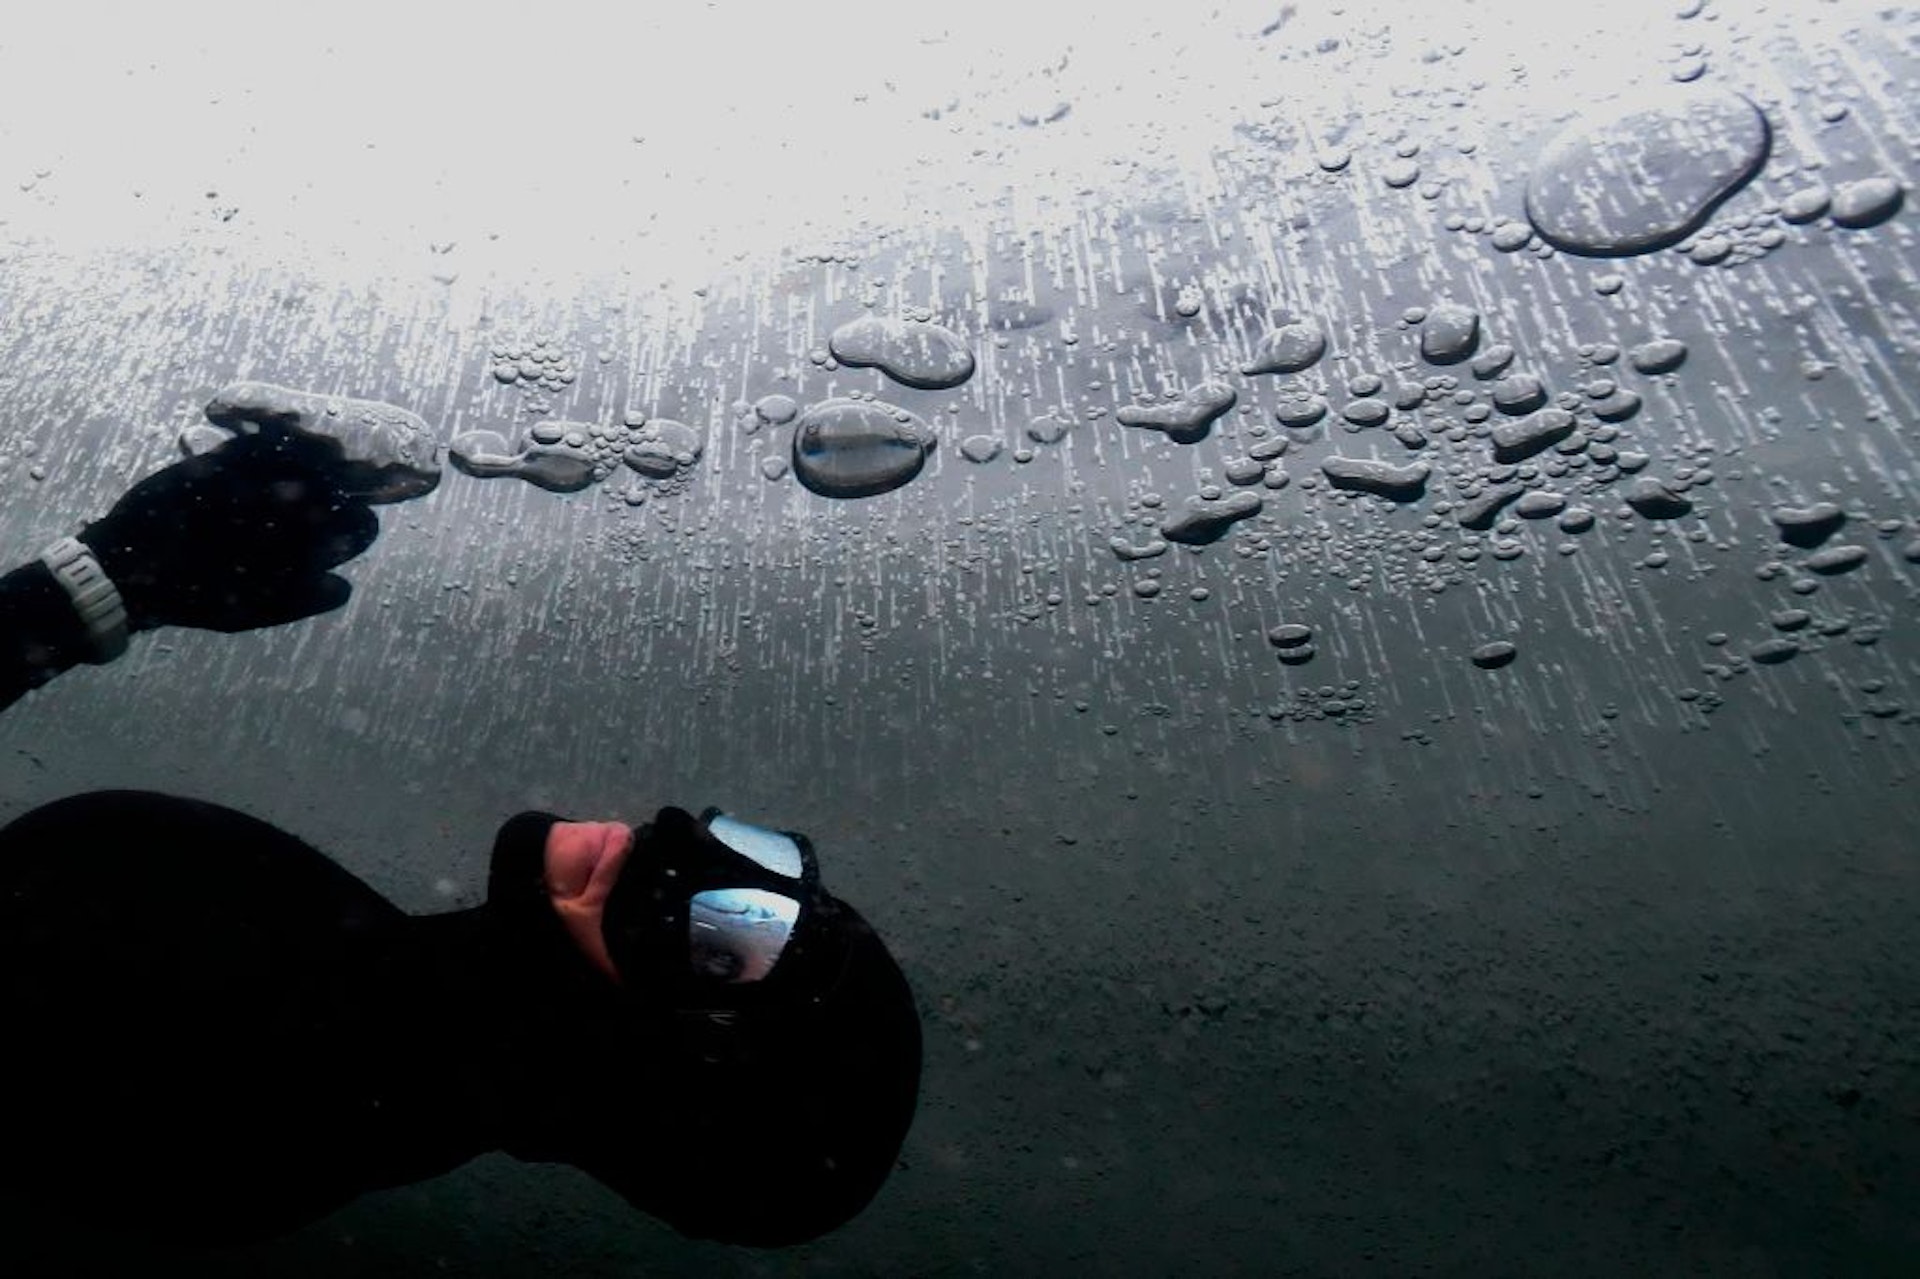 Йоханна Нордблад, 42 года, финская фридайверка плавает подо льдом во время тренировки по фридайвингу 28 февраля 2017 года в Сомеро (юго-запад Финляндии).